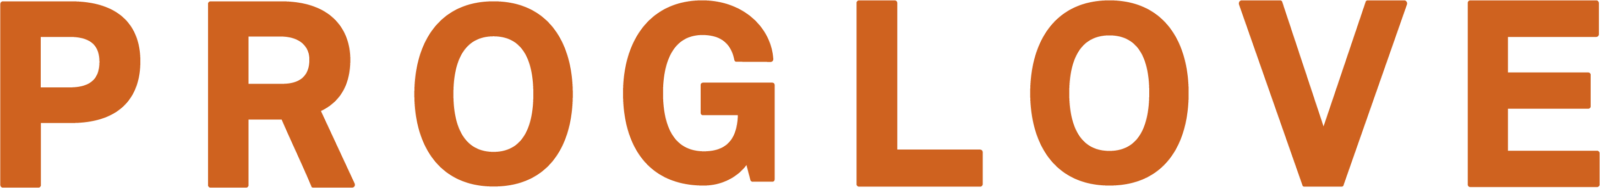 Proglove_Logo